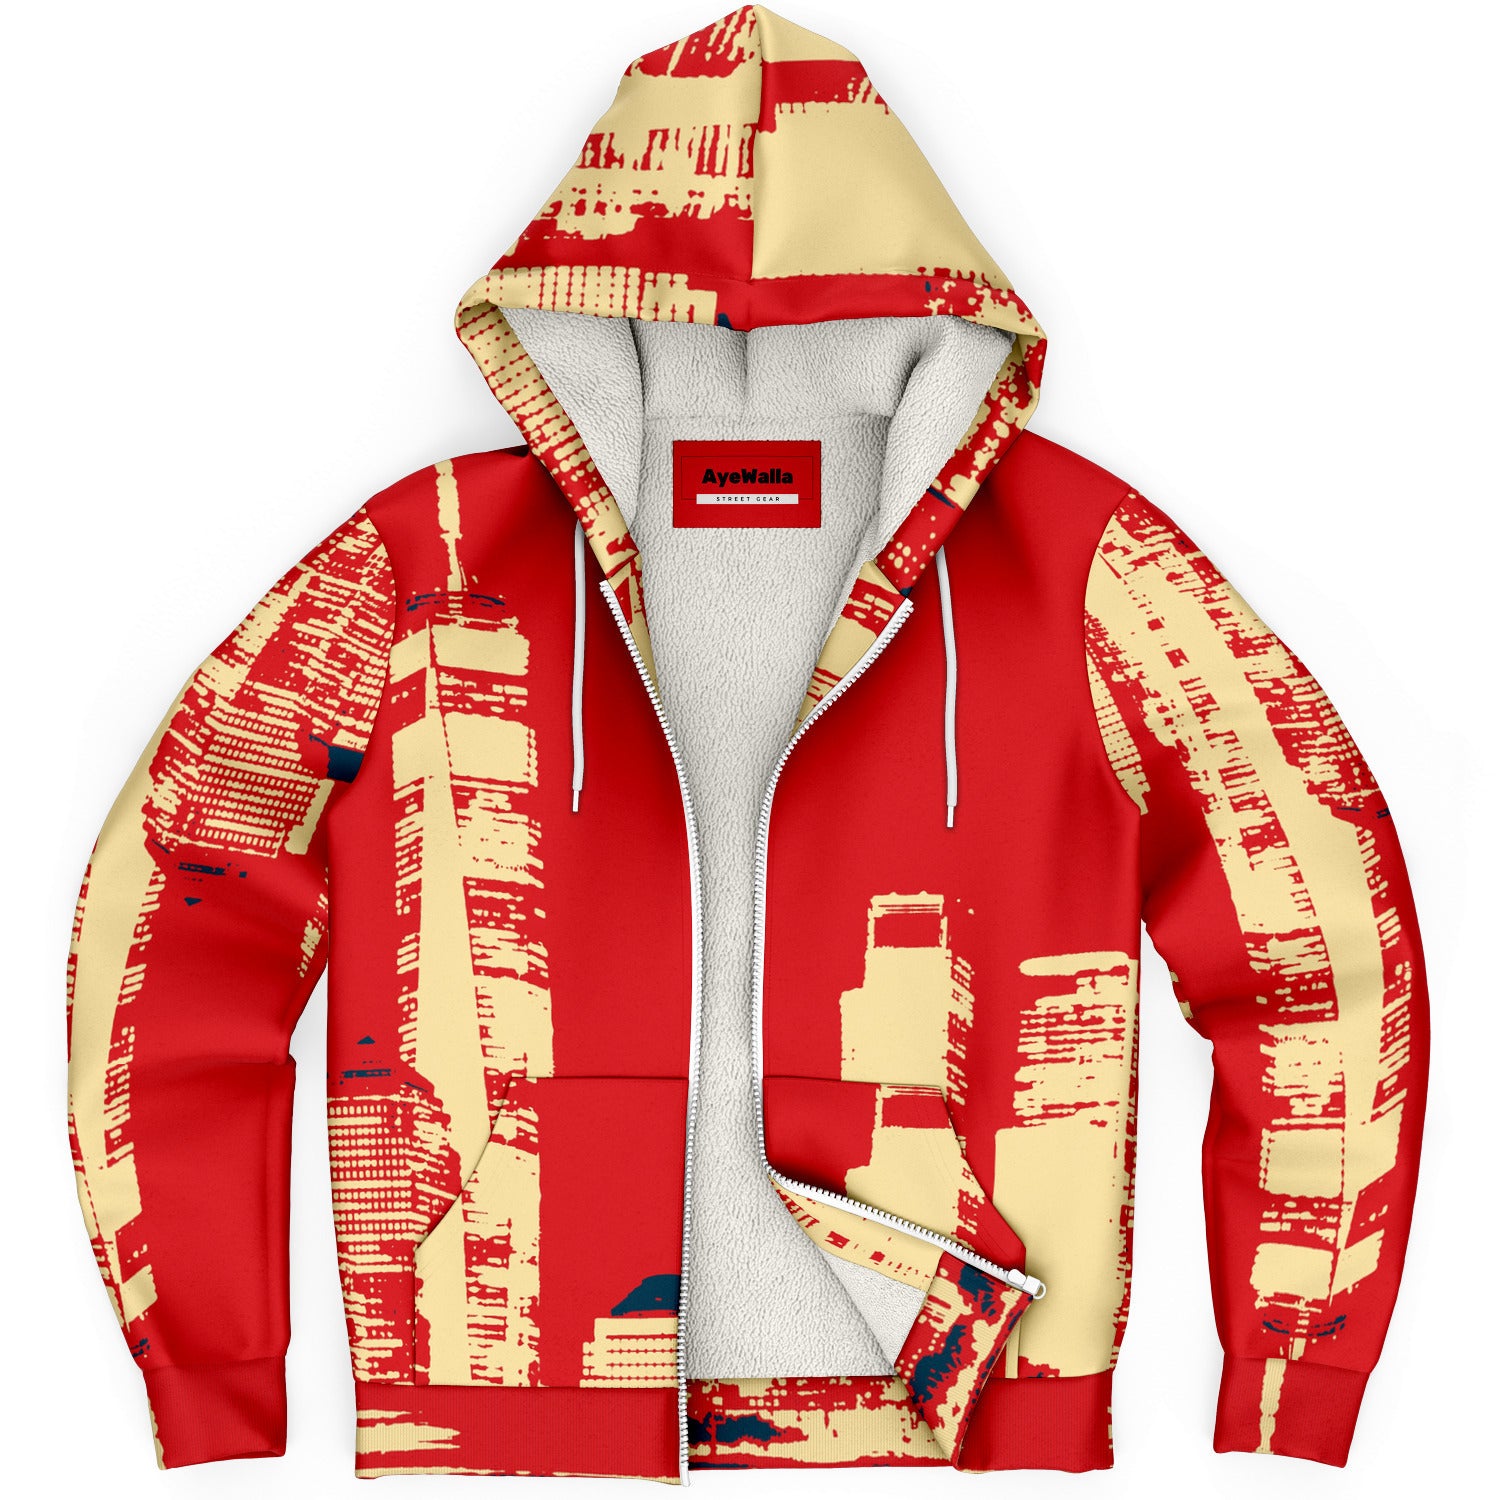 My Hood NYC Microfleece Ziphoodie Jacket | Fashion Jacket | Jacket Hoodie | Jacket | Men's Jacket